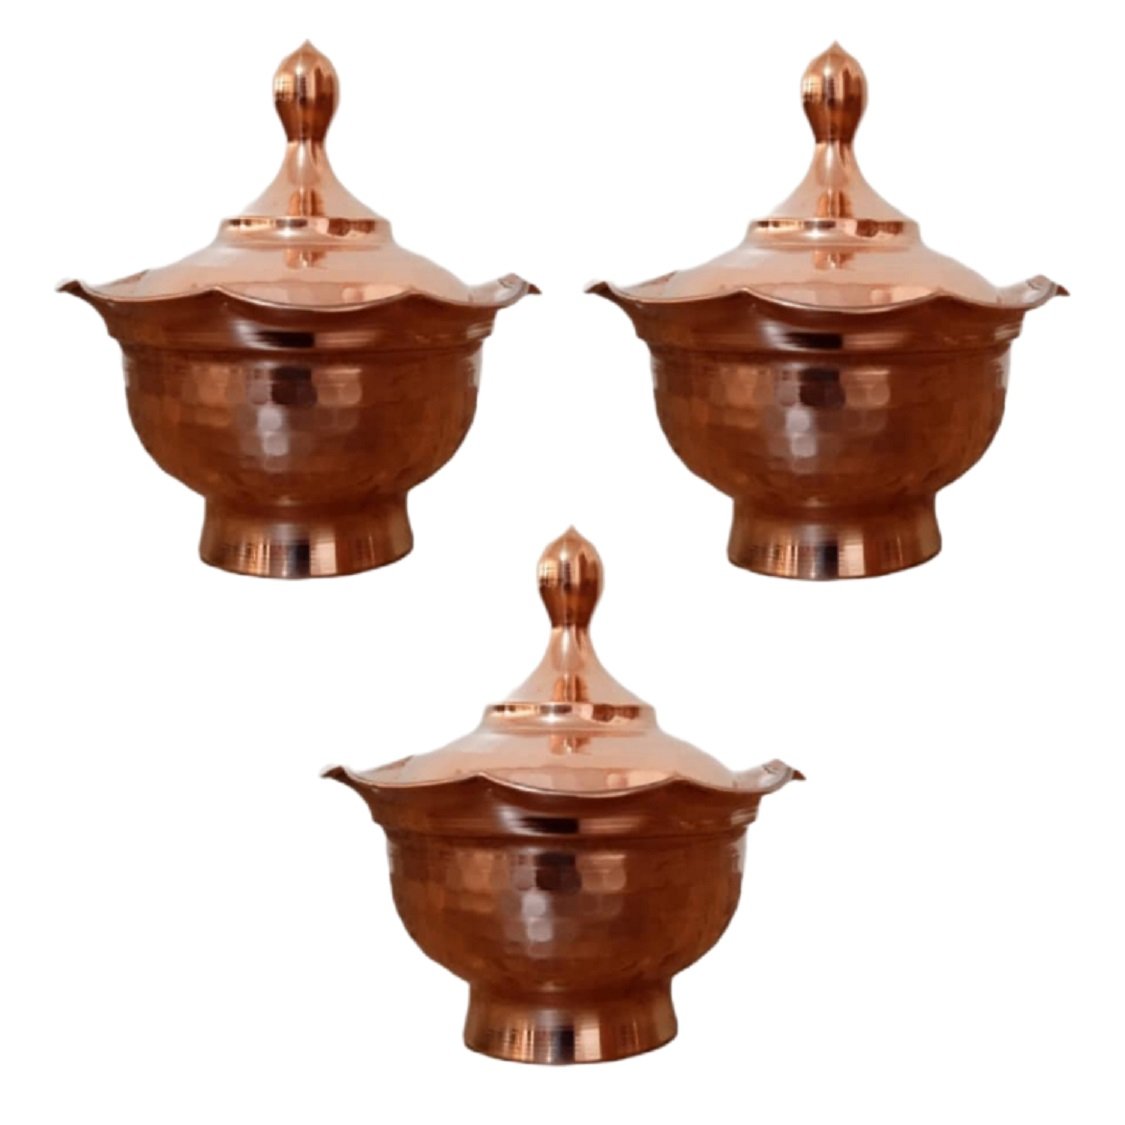 Handicraft Copper container model sgnm0063 set 3 pcs, तांबे के हस्तशिल्प खरीदें, तांबे के सामान खरीदें